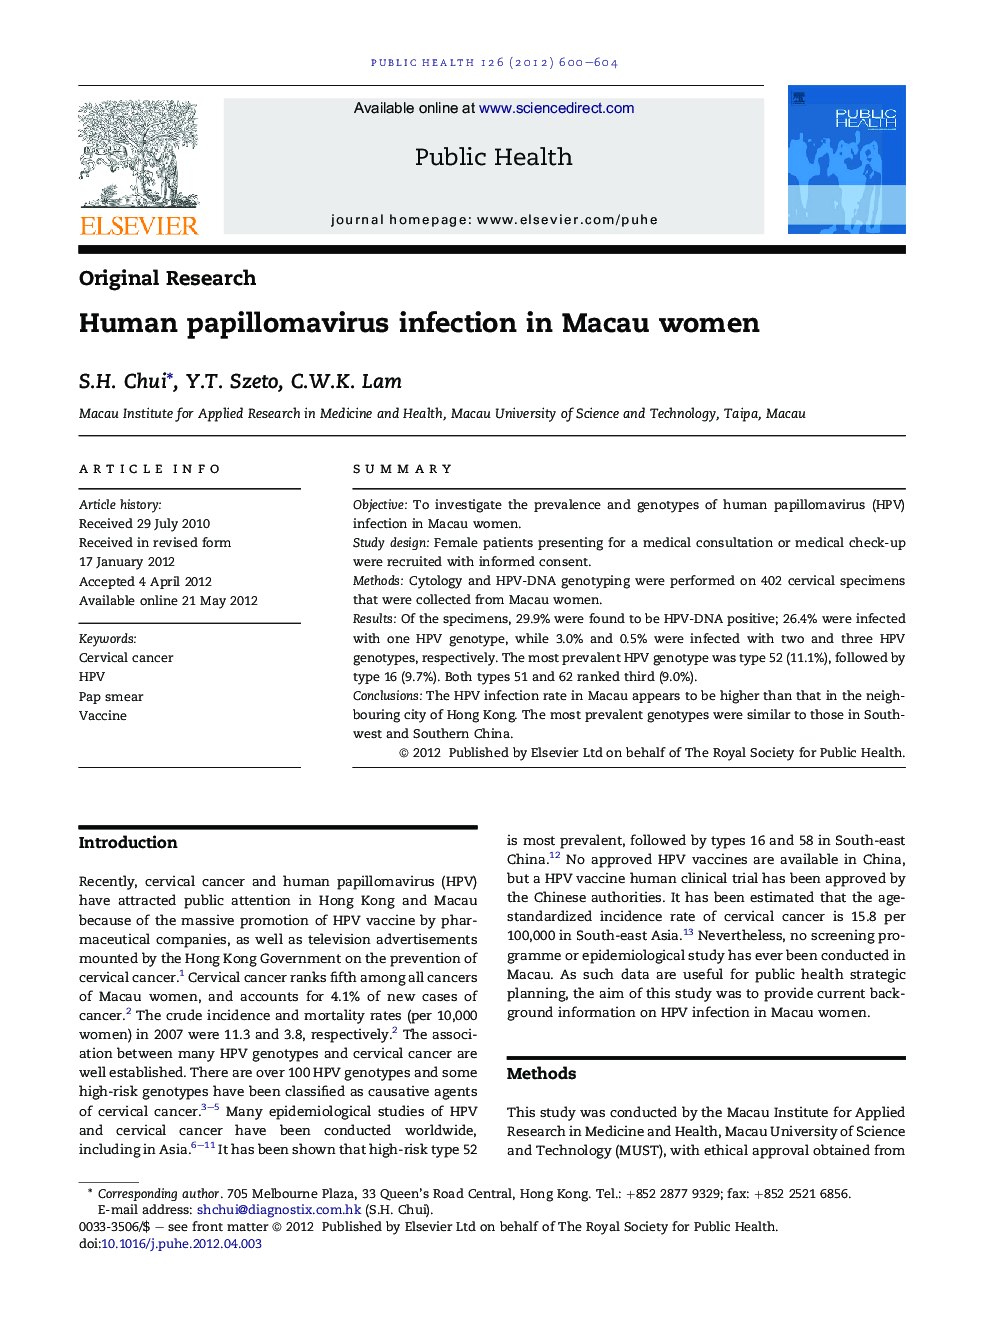 Human papillomavirus infection in Macau women